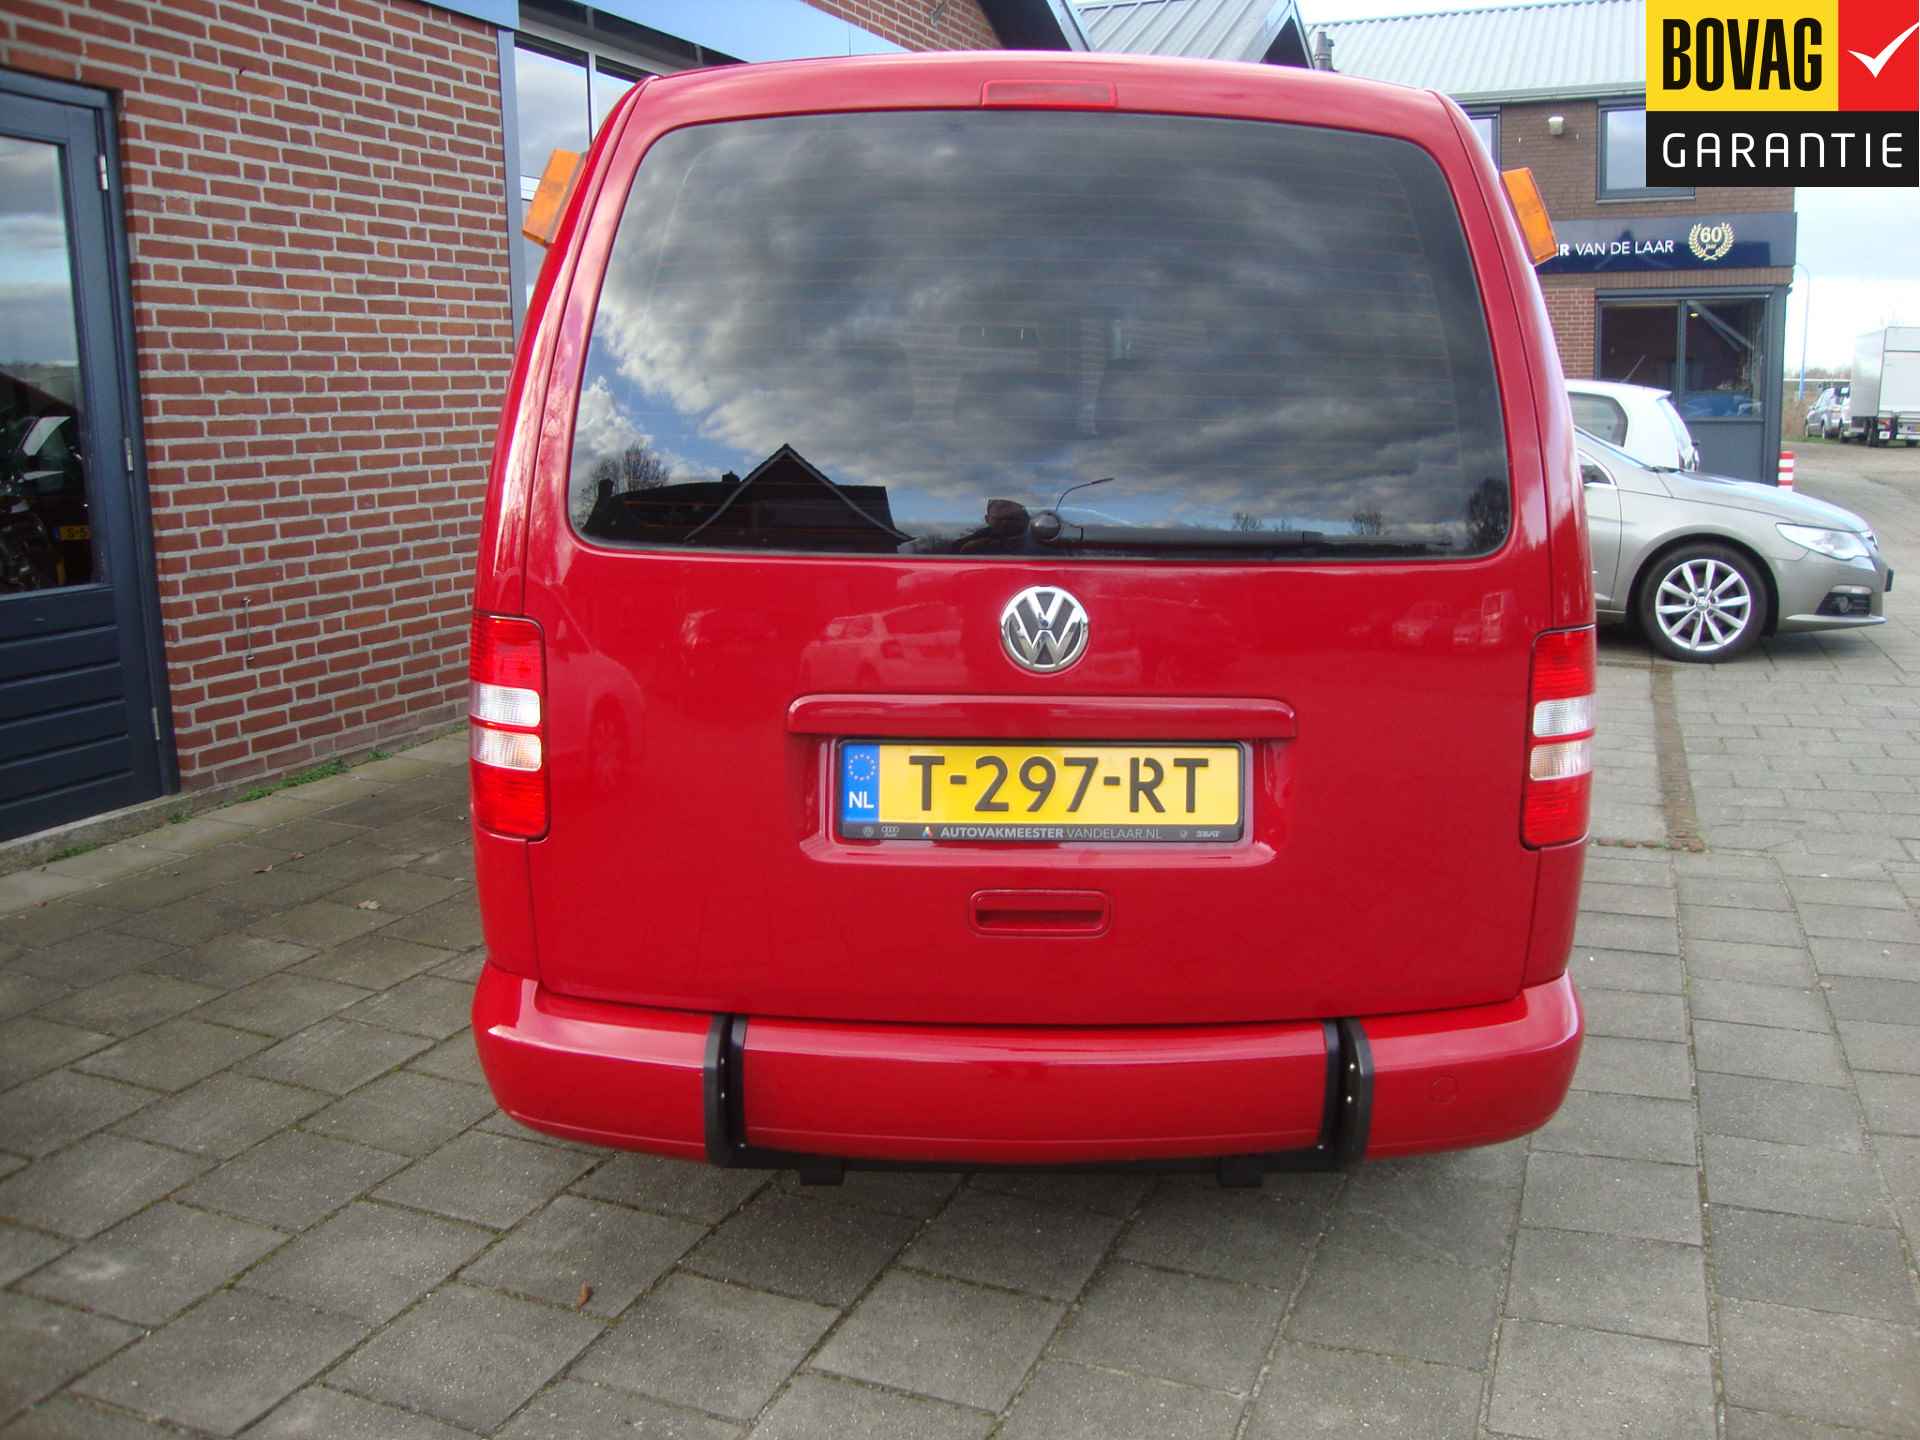 Volkswagen Caddy Maxi 1.2 TSI Trendline Rolstoel / Invalide , 5 pers + 1 rolstoelplaats( Airco,Cruise Control) RIJKLAARPRIJS! - 26/47